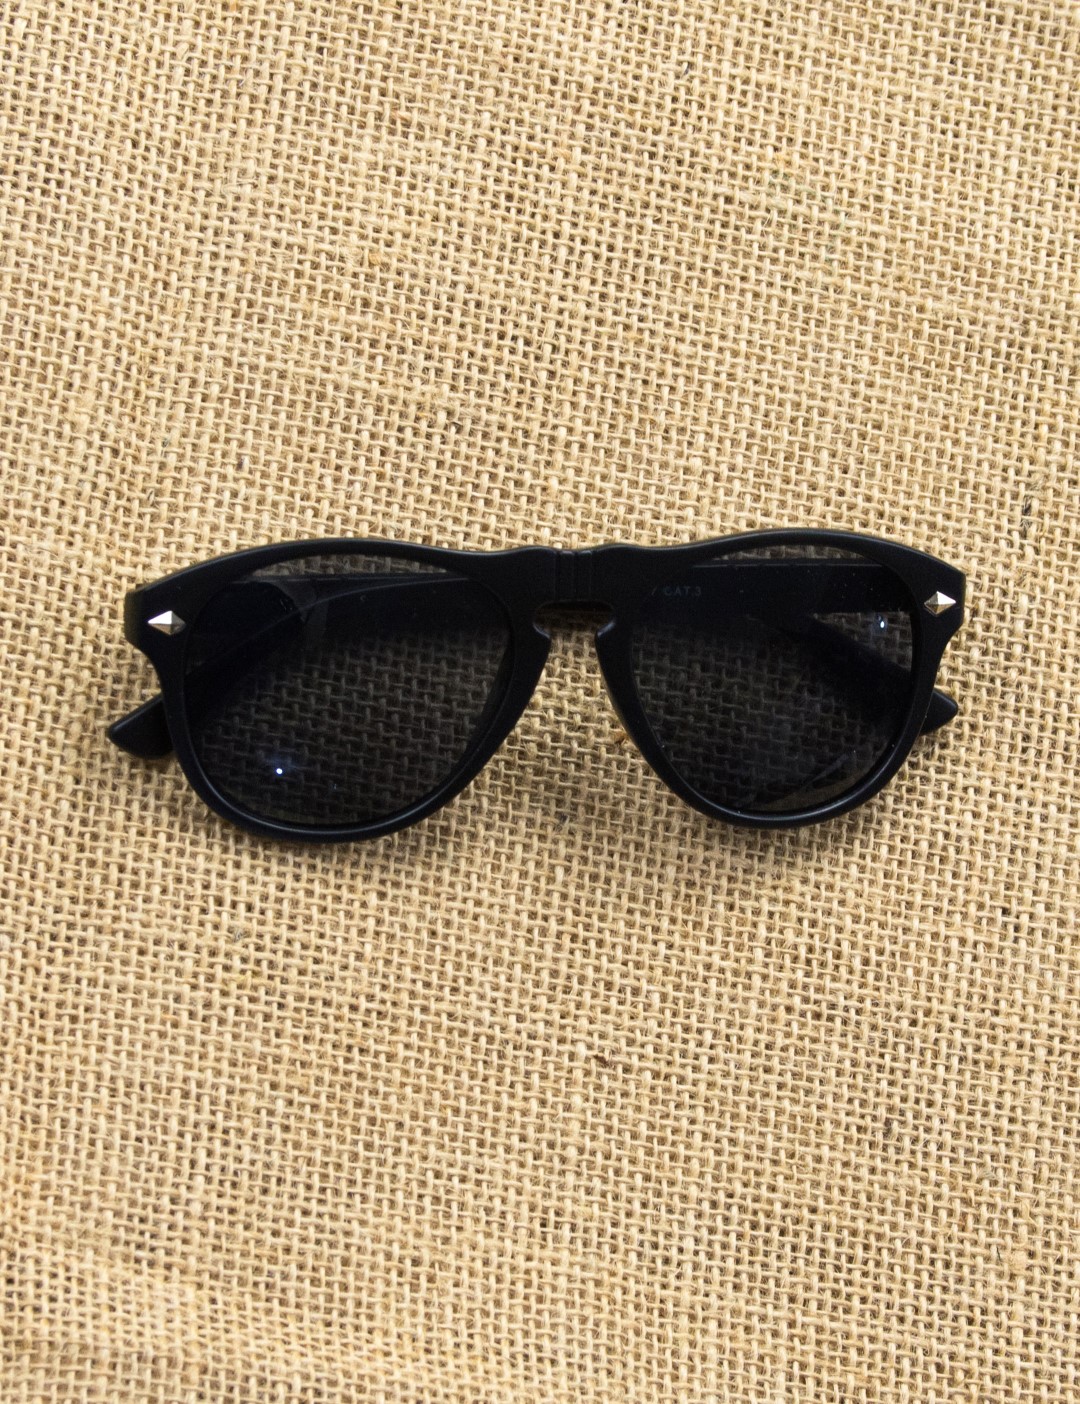 Ανδρικά μαύρα γυαλιά ηλίου ματ Luxury S5037